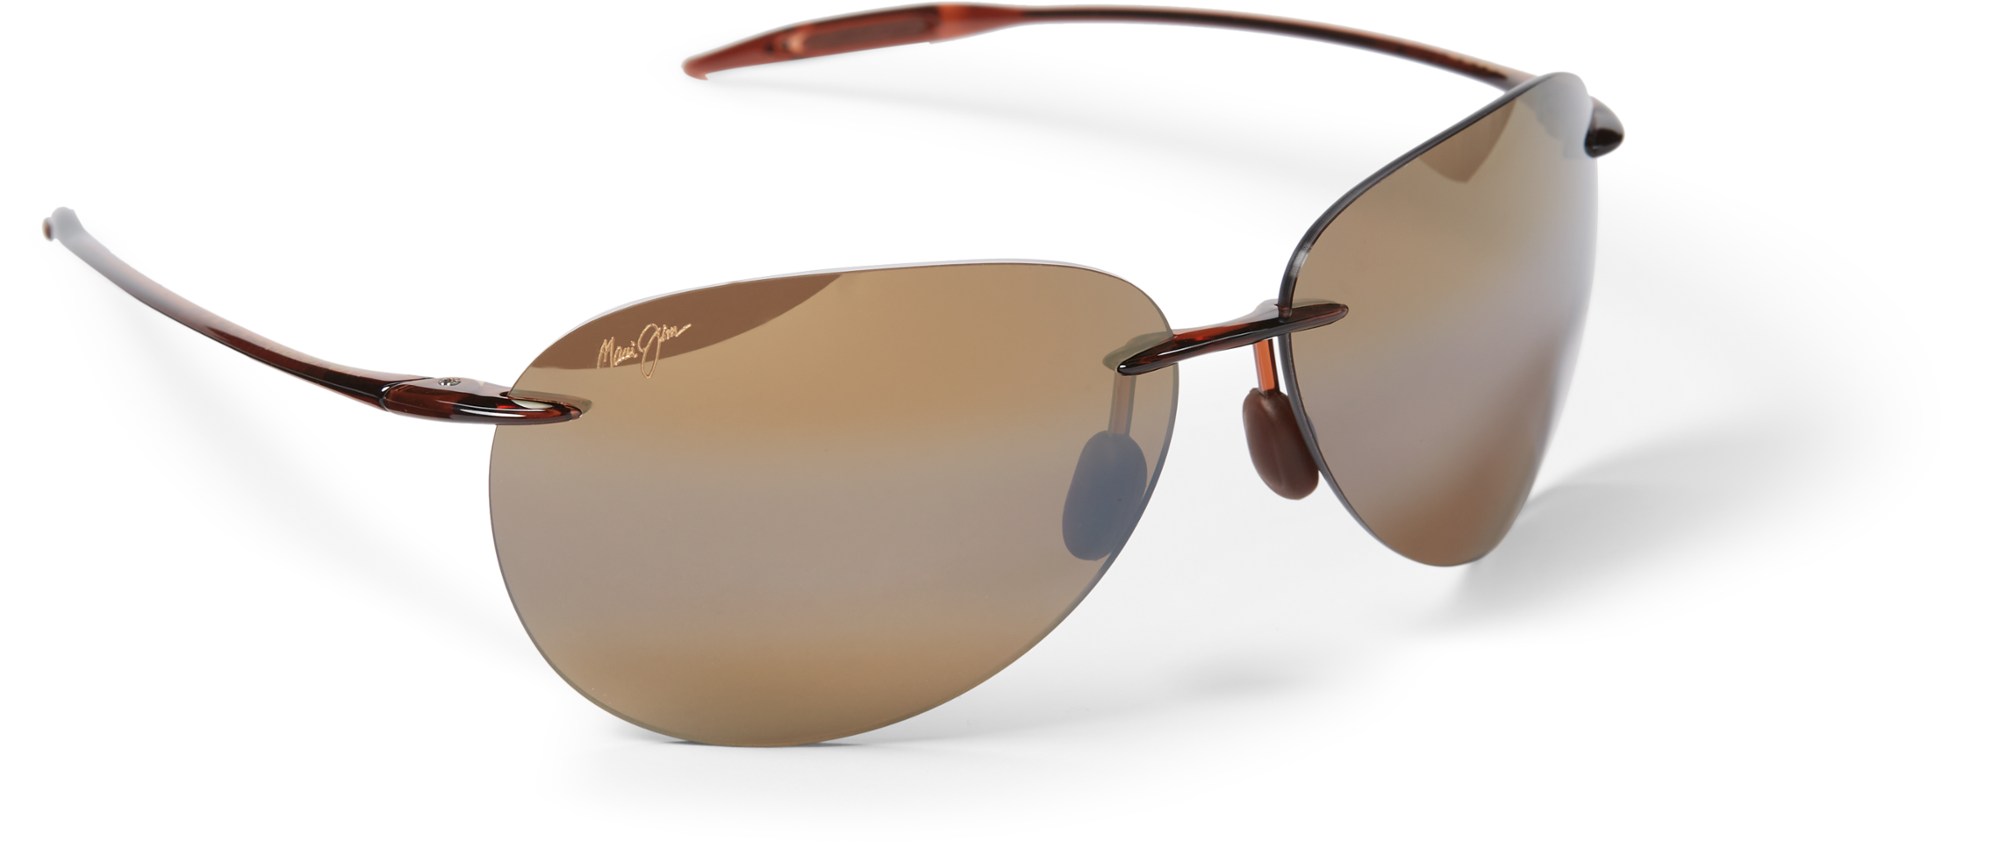 Поляризованные солнцезащитные очки Sugar Beach Maui Jim, коричневый солнцезащитные очки kou maui jim цвет navy blue blue hawaii